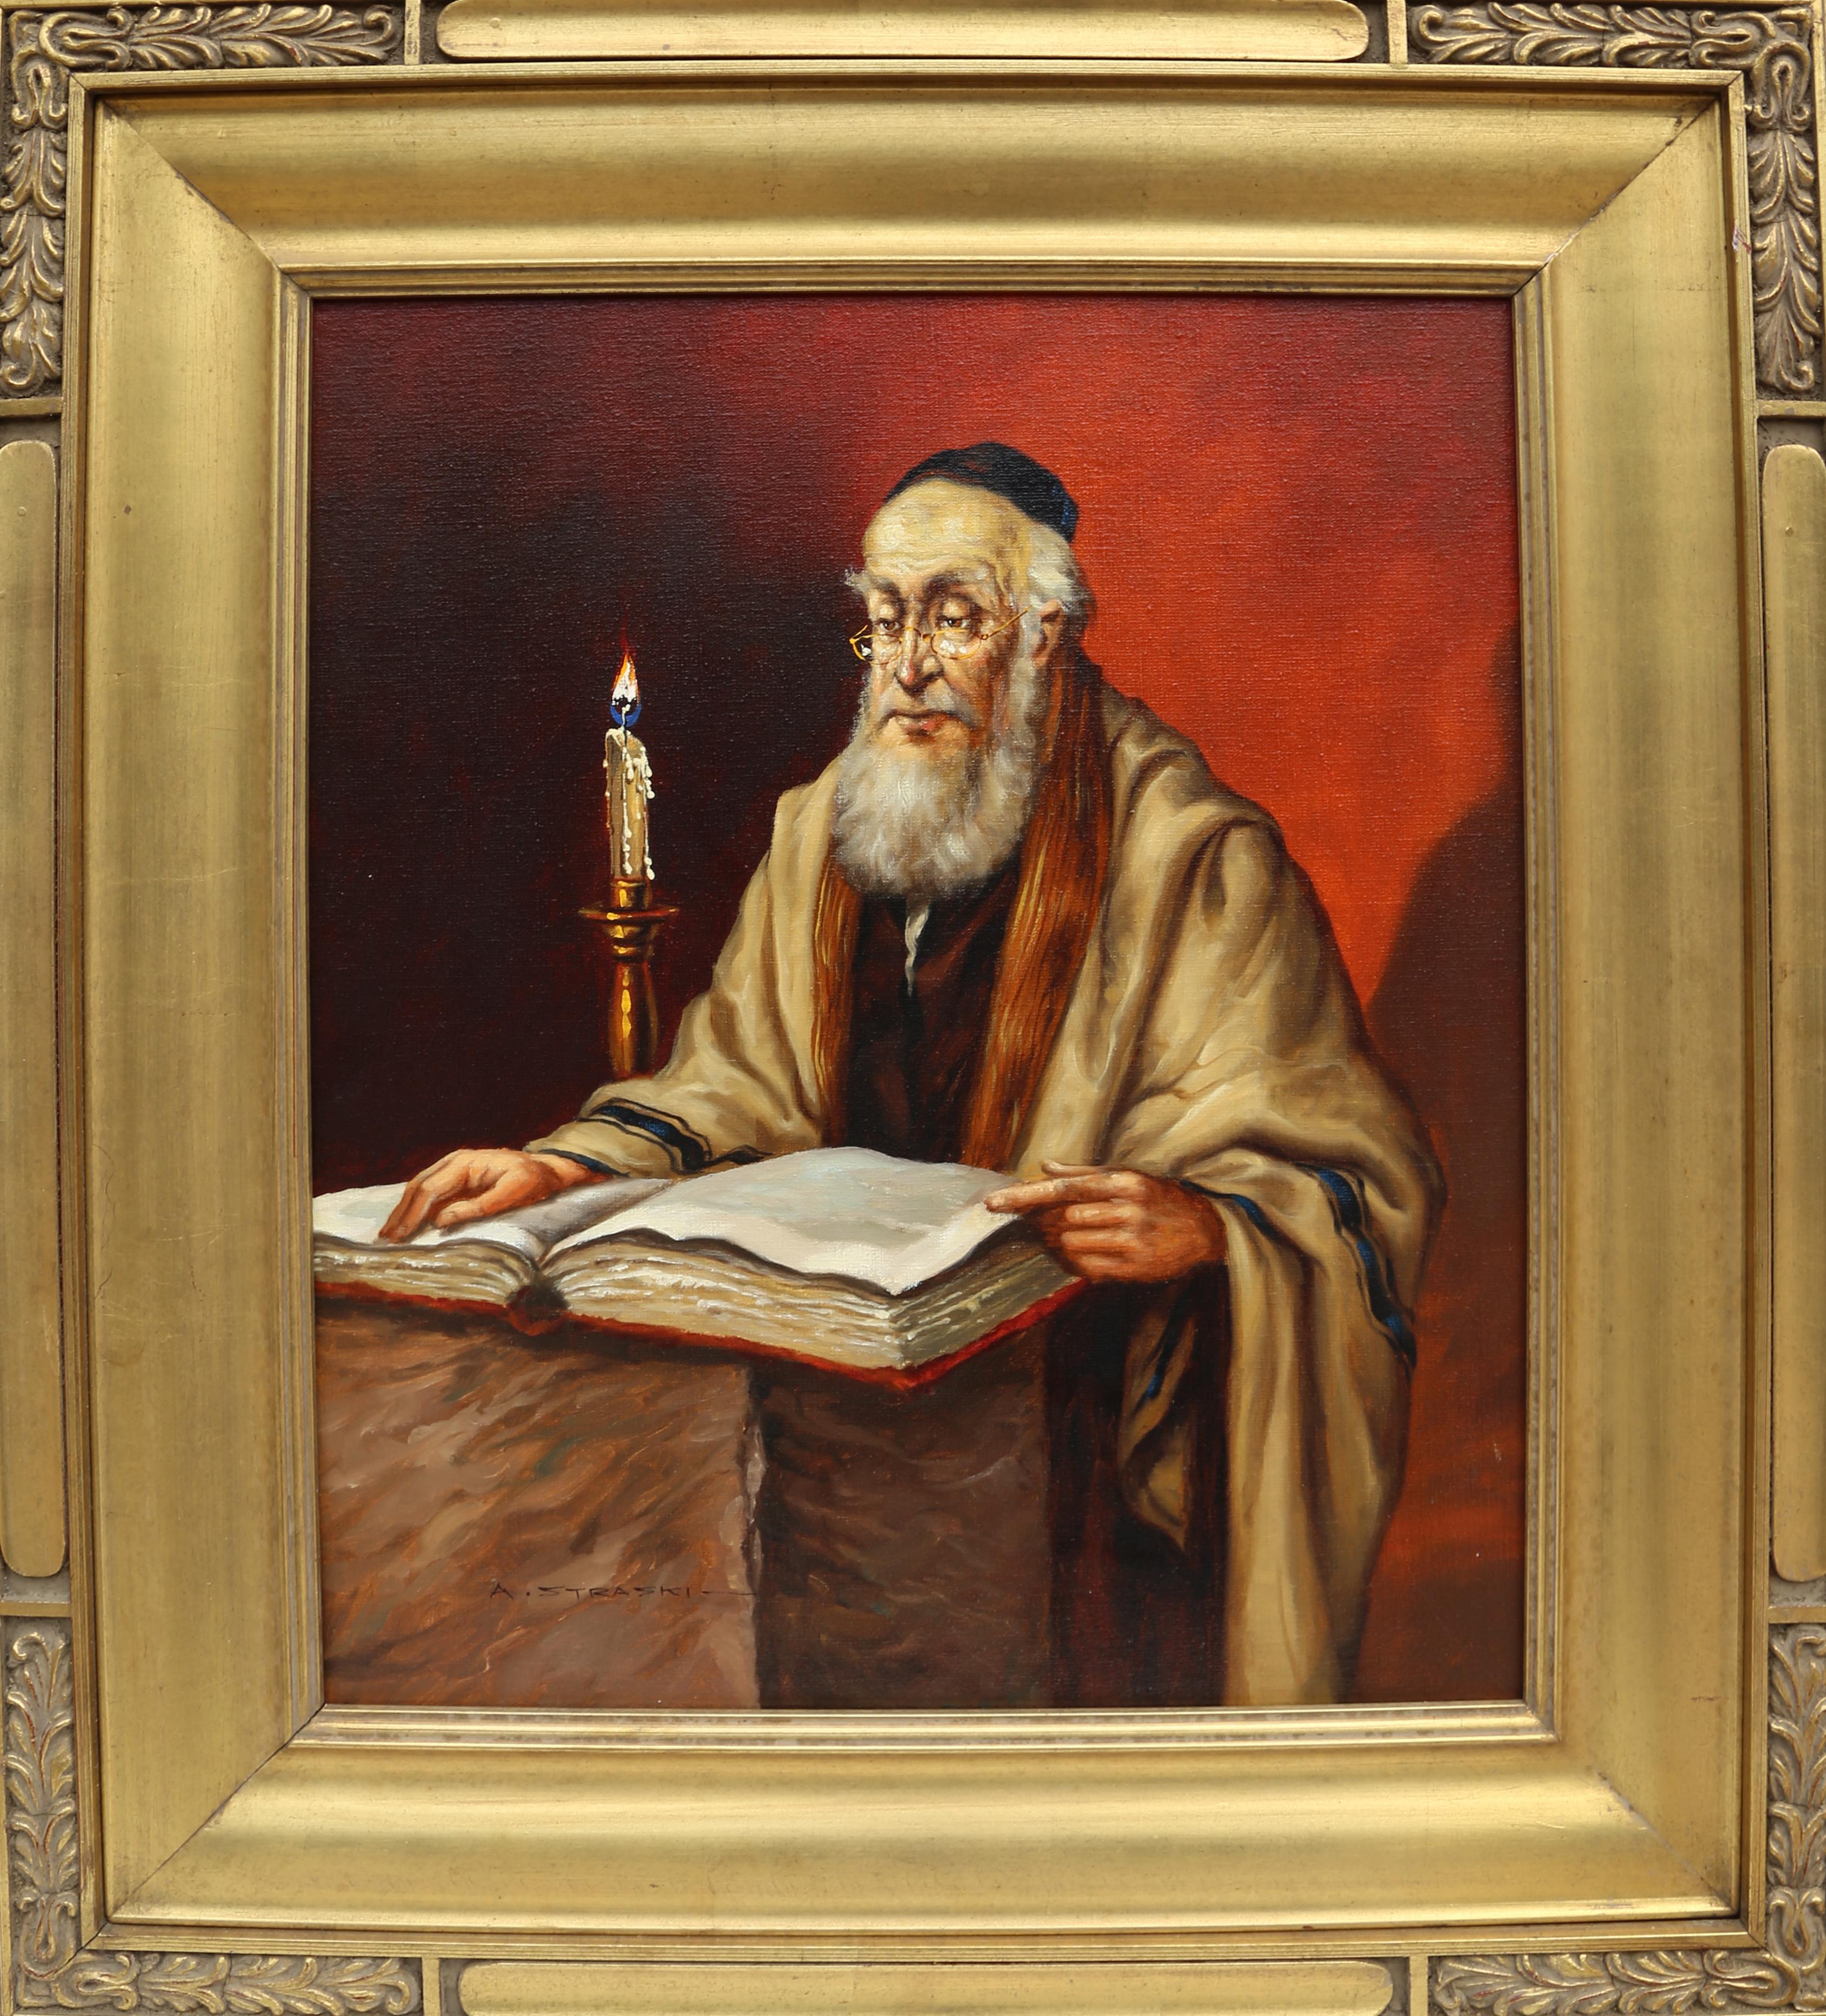 Rabbinerlesung bei Kerzenschein (6-F)
Abraham Straski, Pole (1903-1987)
Datum: 1959
Öl auf Leinwand, signiert und datiert
Größe: 23 x 19 Zoll (58,42 x 48,26 cm)
Rahmengröße: 33,5 x 29,5 Zoll